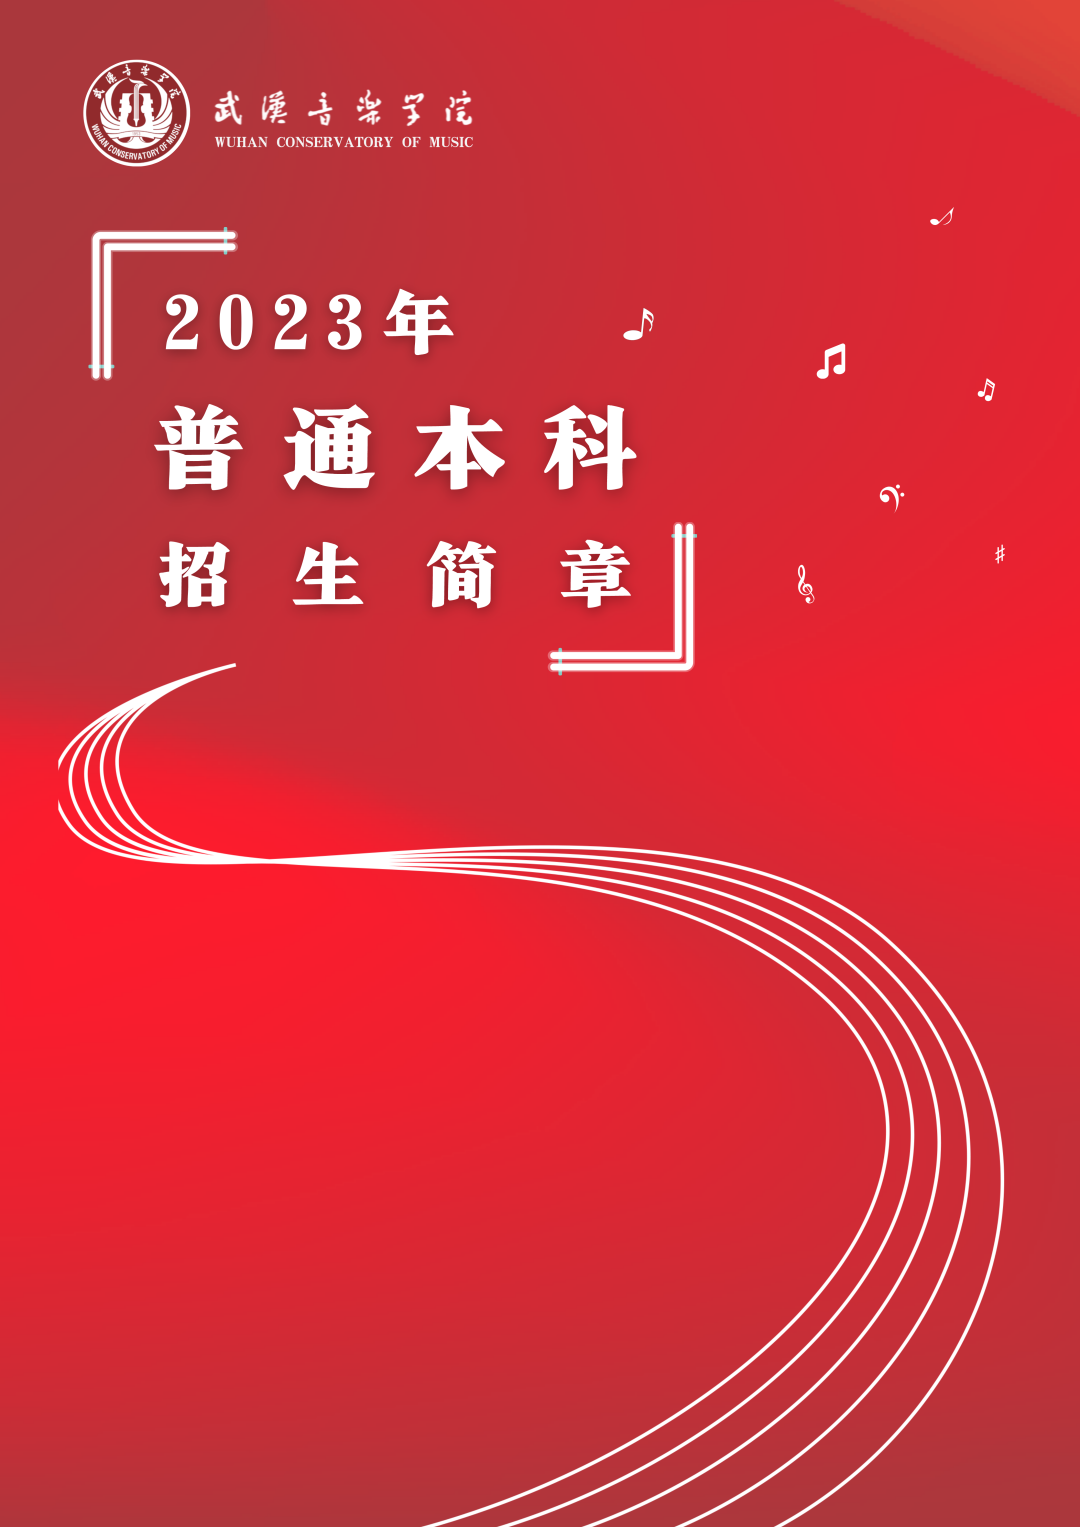 校考 | 武汉音乐学院2023招生简章、大纲、曲目库发布 (http://www.hnyixiao.com/) 校内新闻 第1张